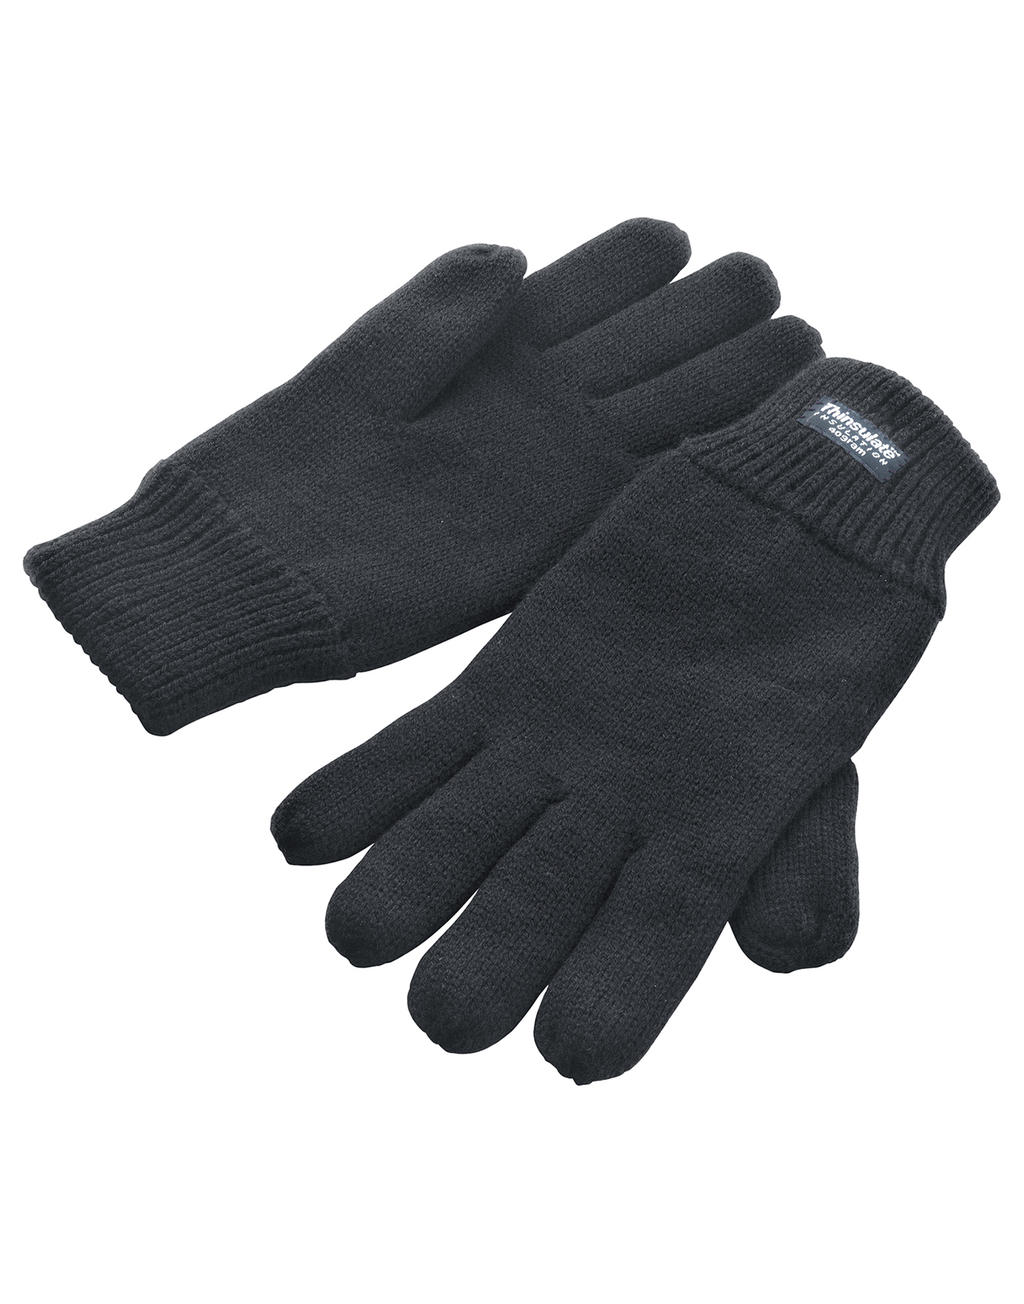 Teplé rukavice Thinsulate - black